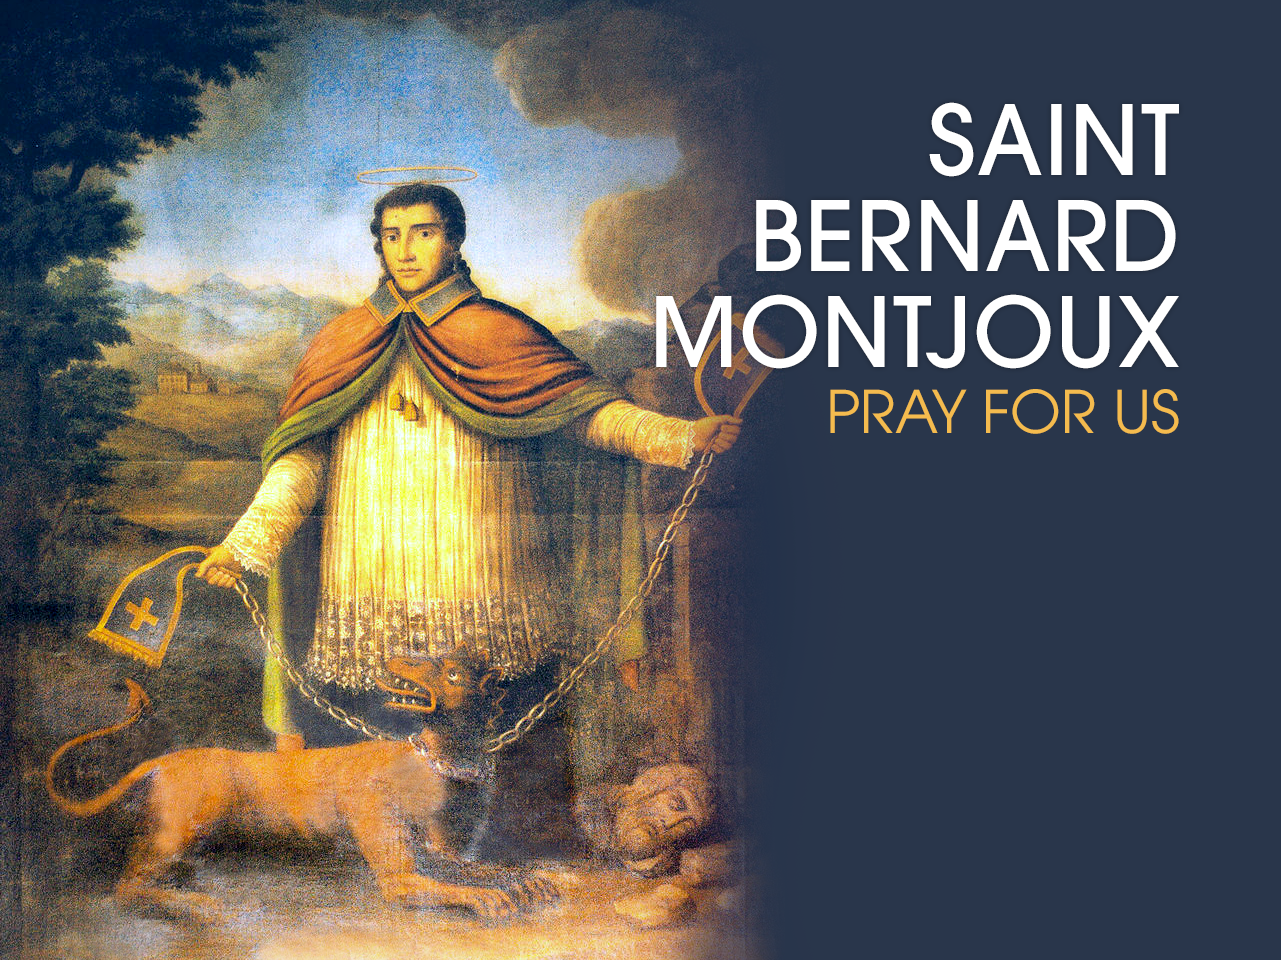 St. Bernard Montjoux